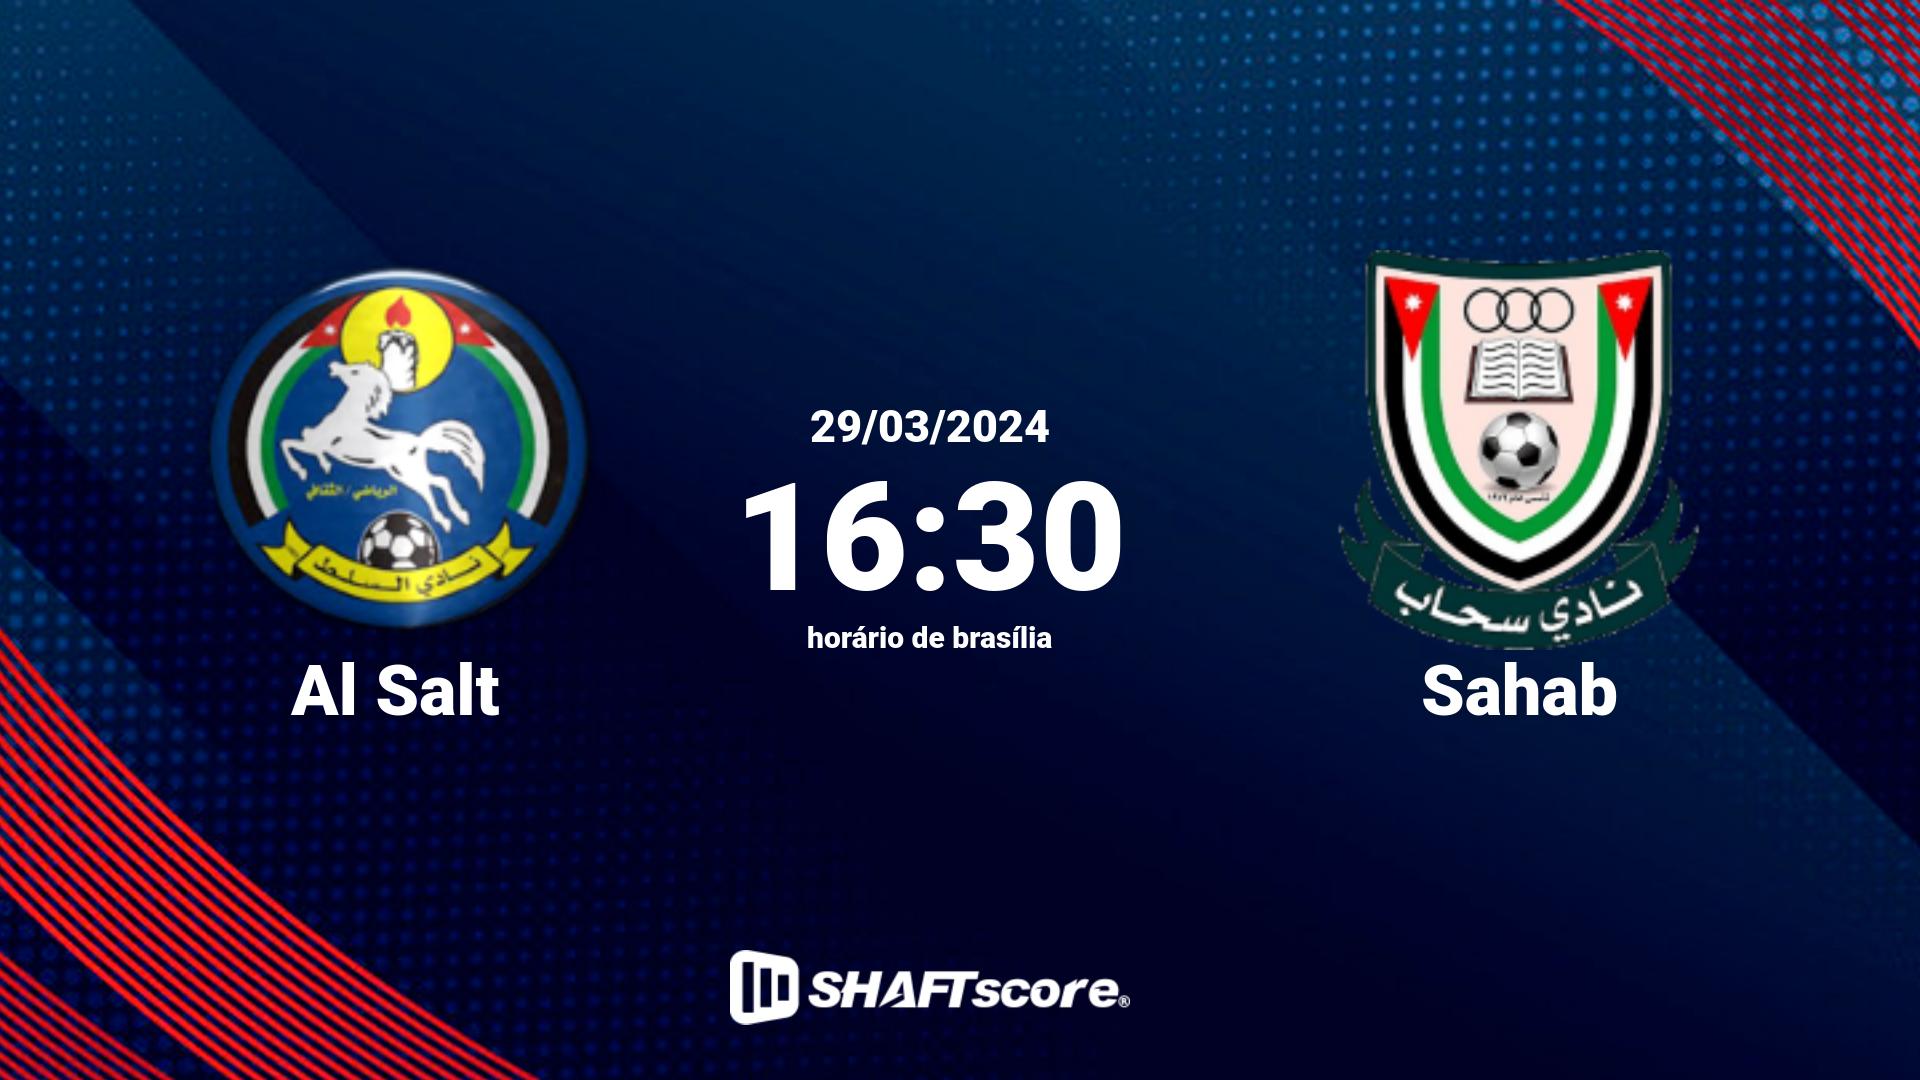 Estatísticas do jogo Al Salt vs Sahab 29.03 16:30